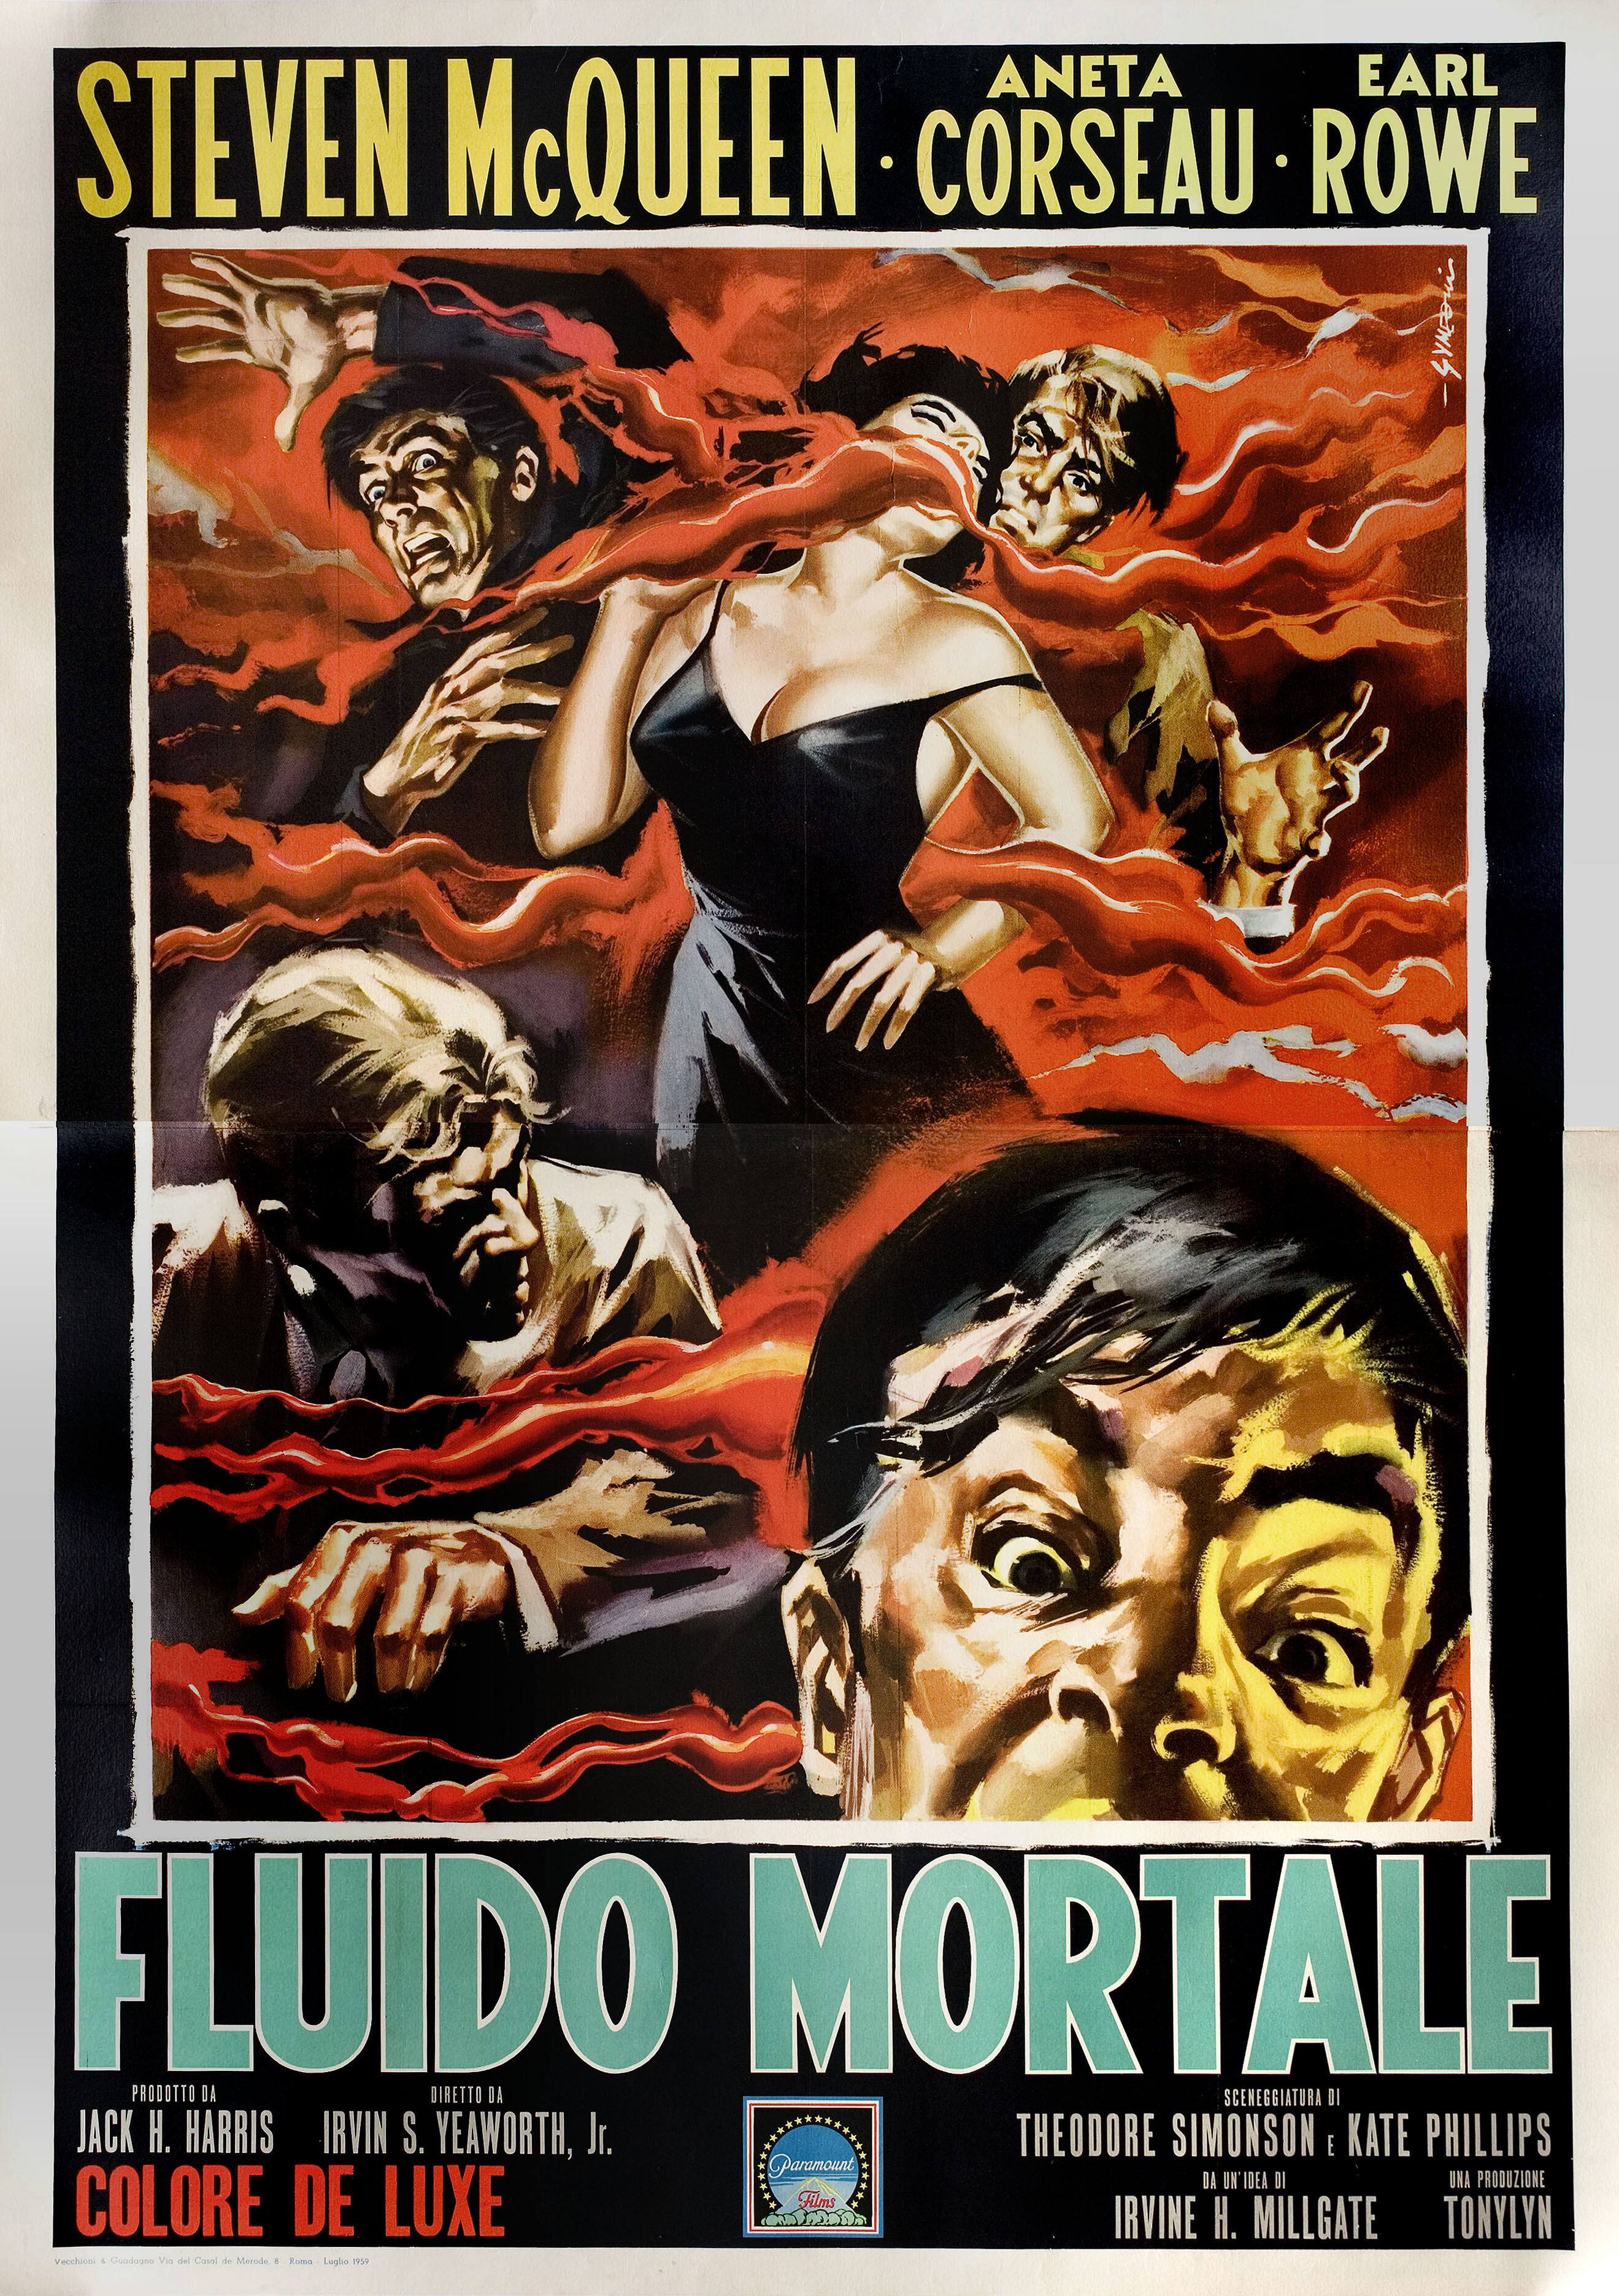 Капля (The Blob, 1958), режиссёр Ирвин С. Йеворт мл., итальянский постер к фильму, автор Сандро Симеони (ужасы, 1959 год)